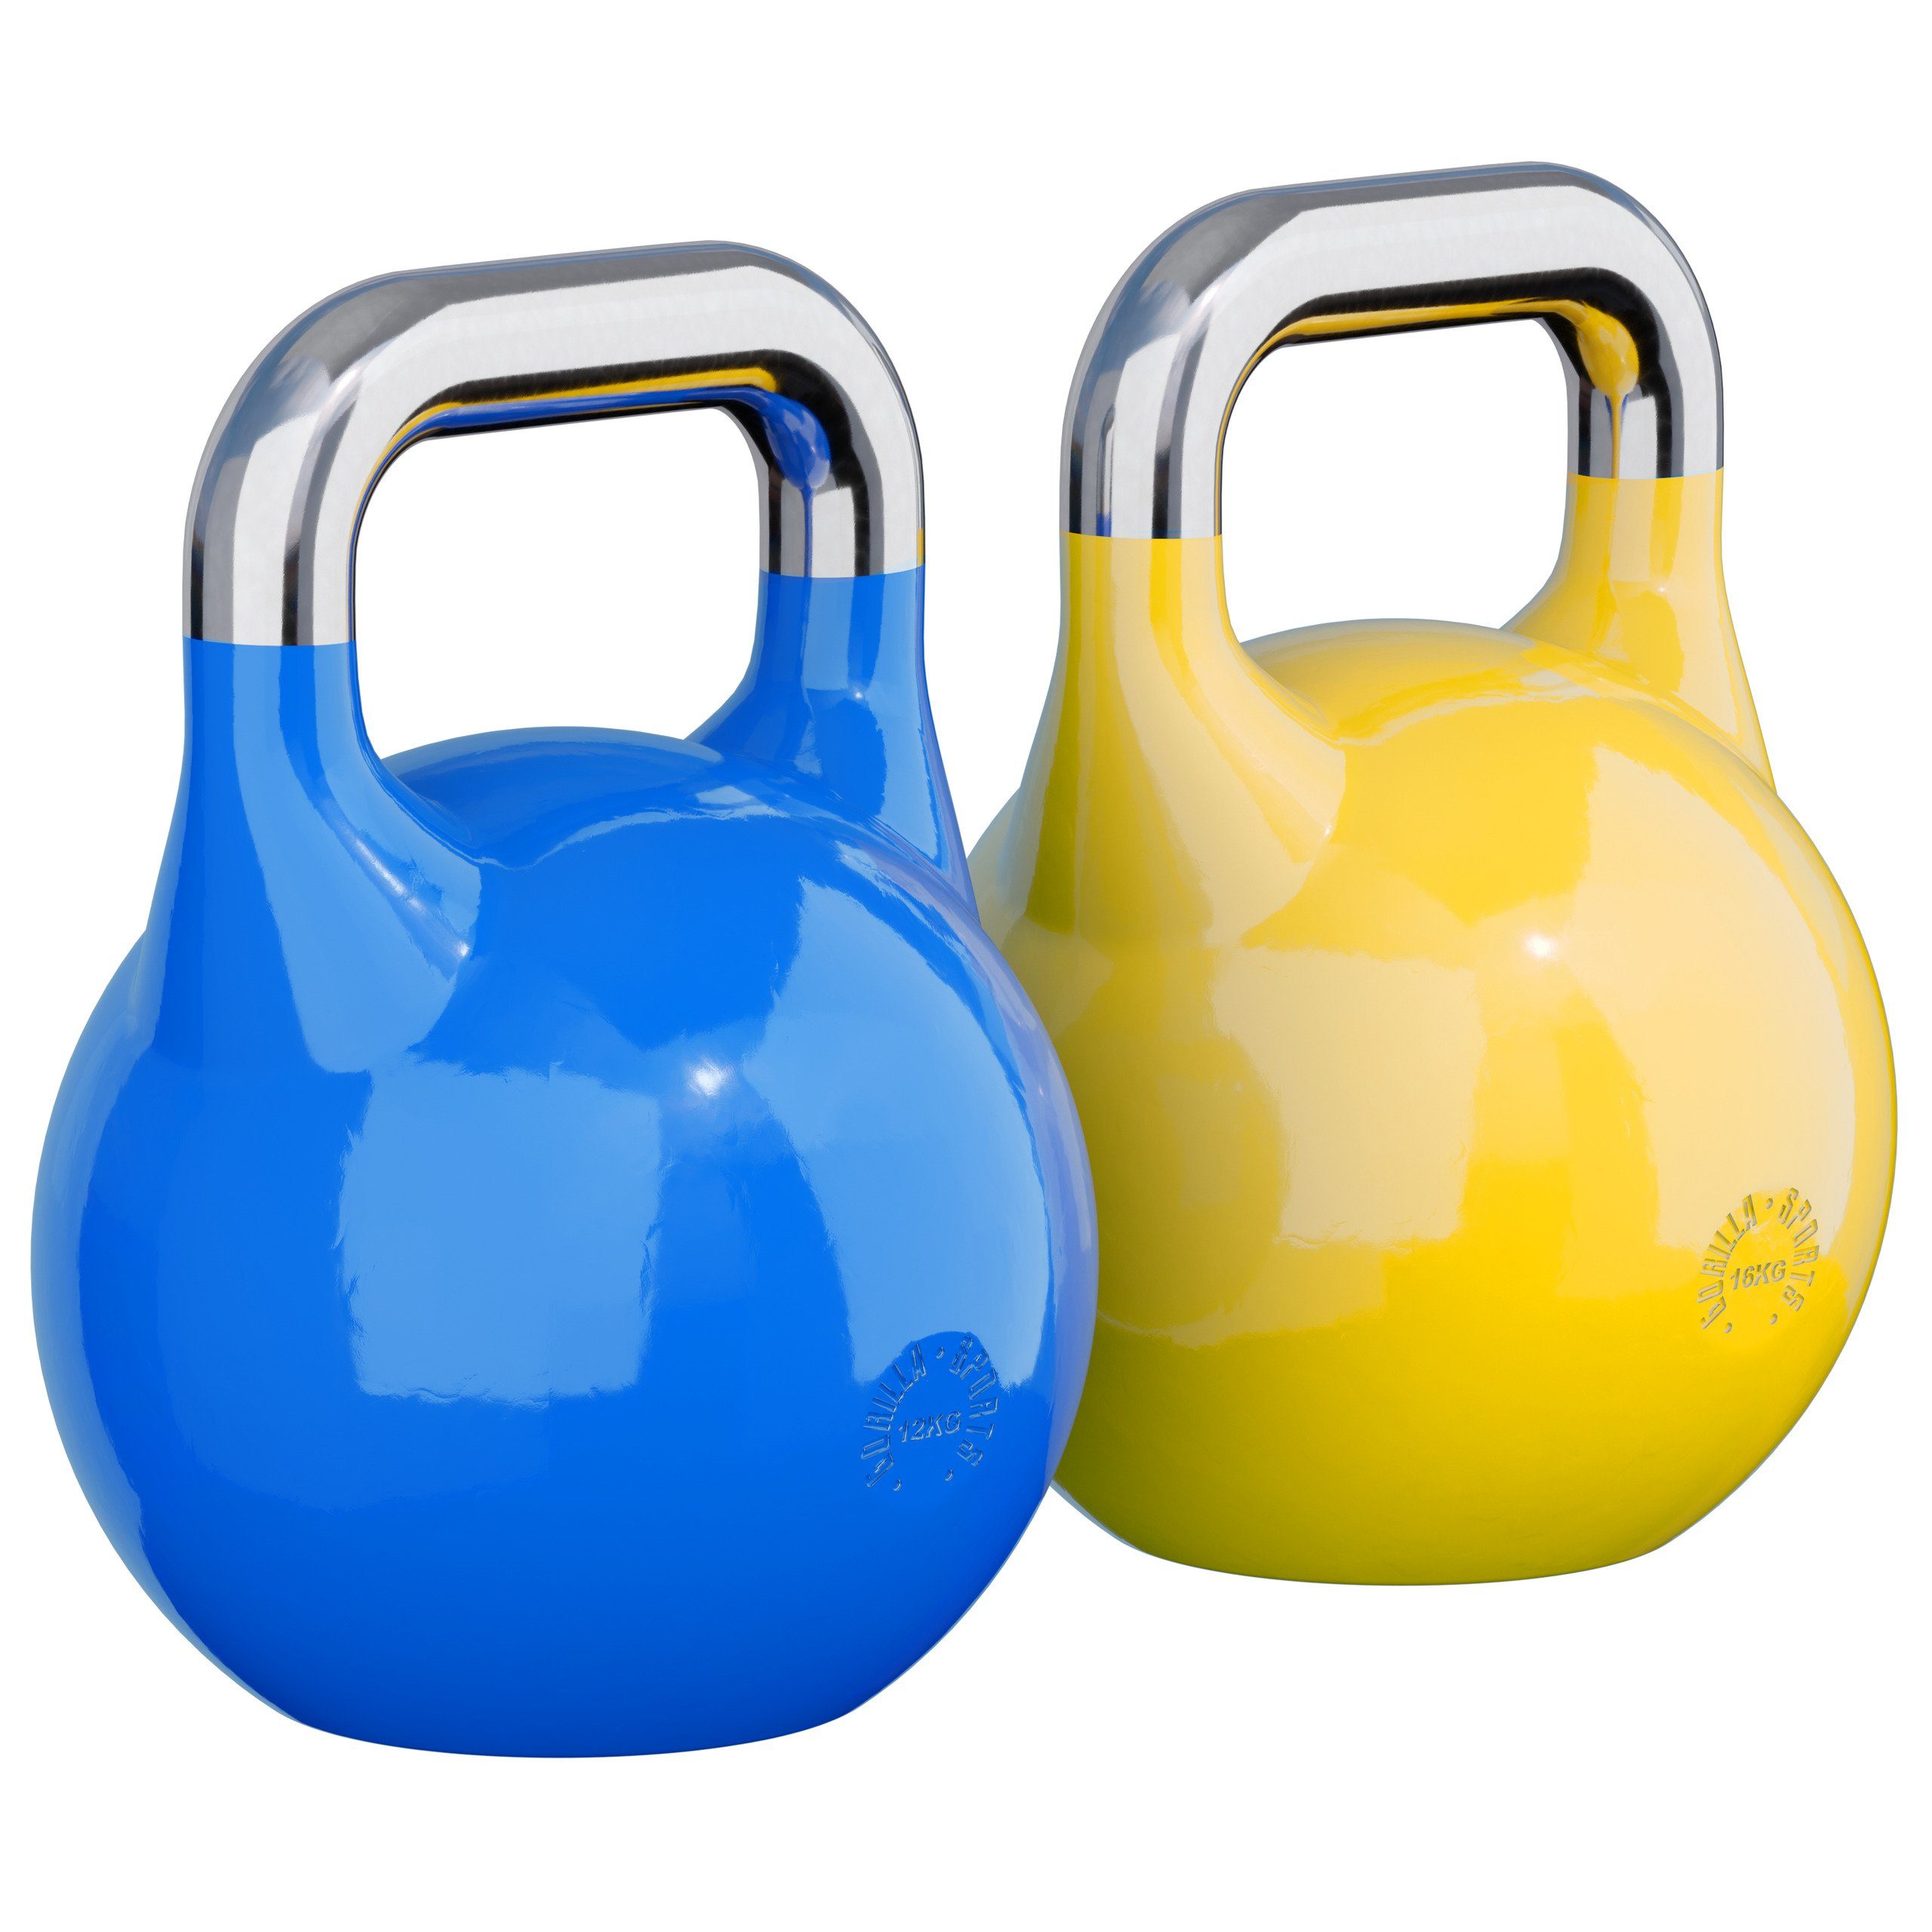 GORILLA SPORTS Kettlebell Gewicht 8 bis 36 kg, Bodenschonende, aus Massivstahlguss, Kugelhantel 28 kg (Blau und Gelb)